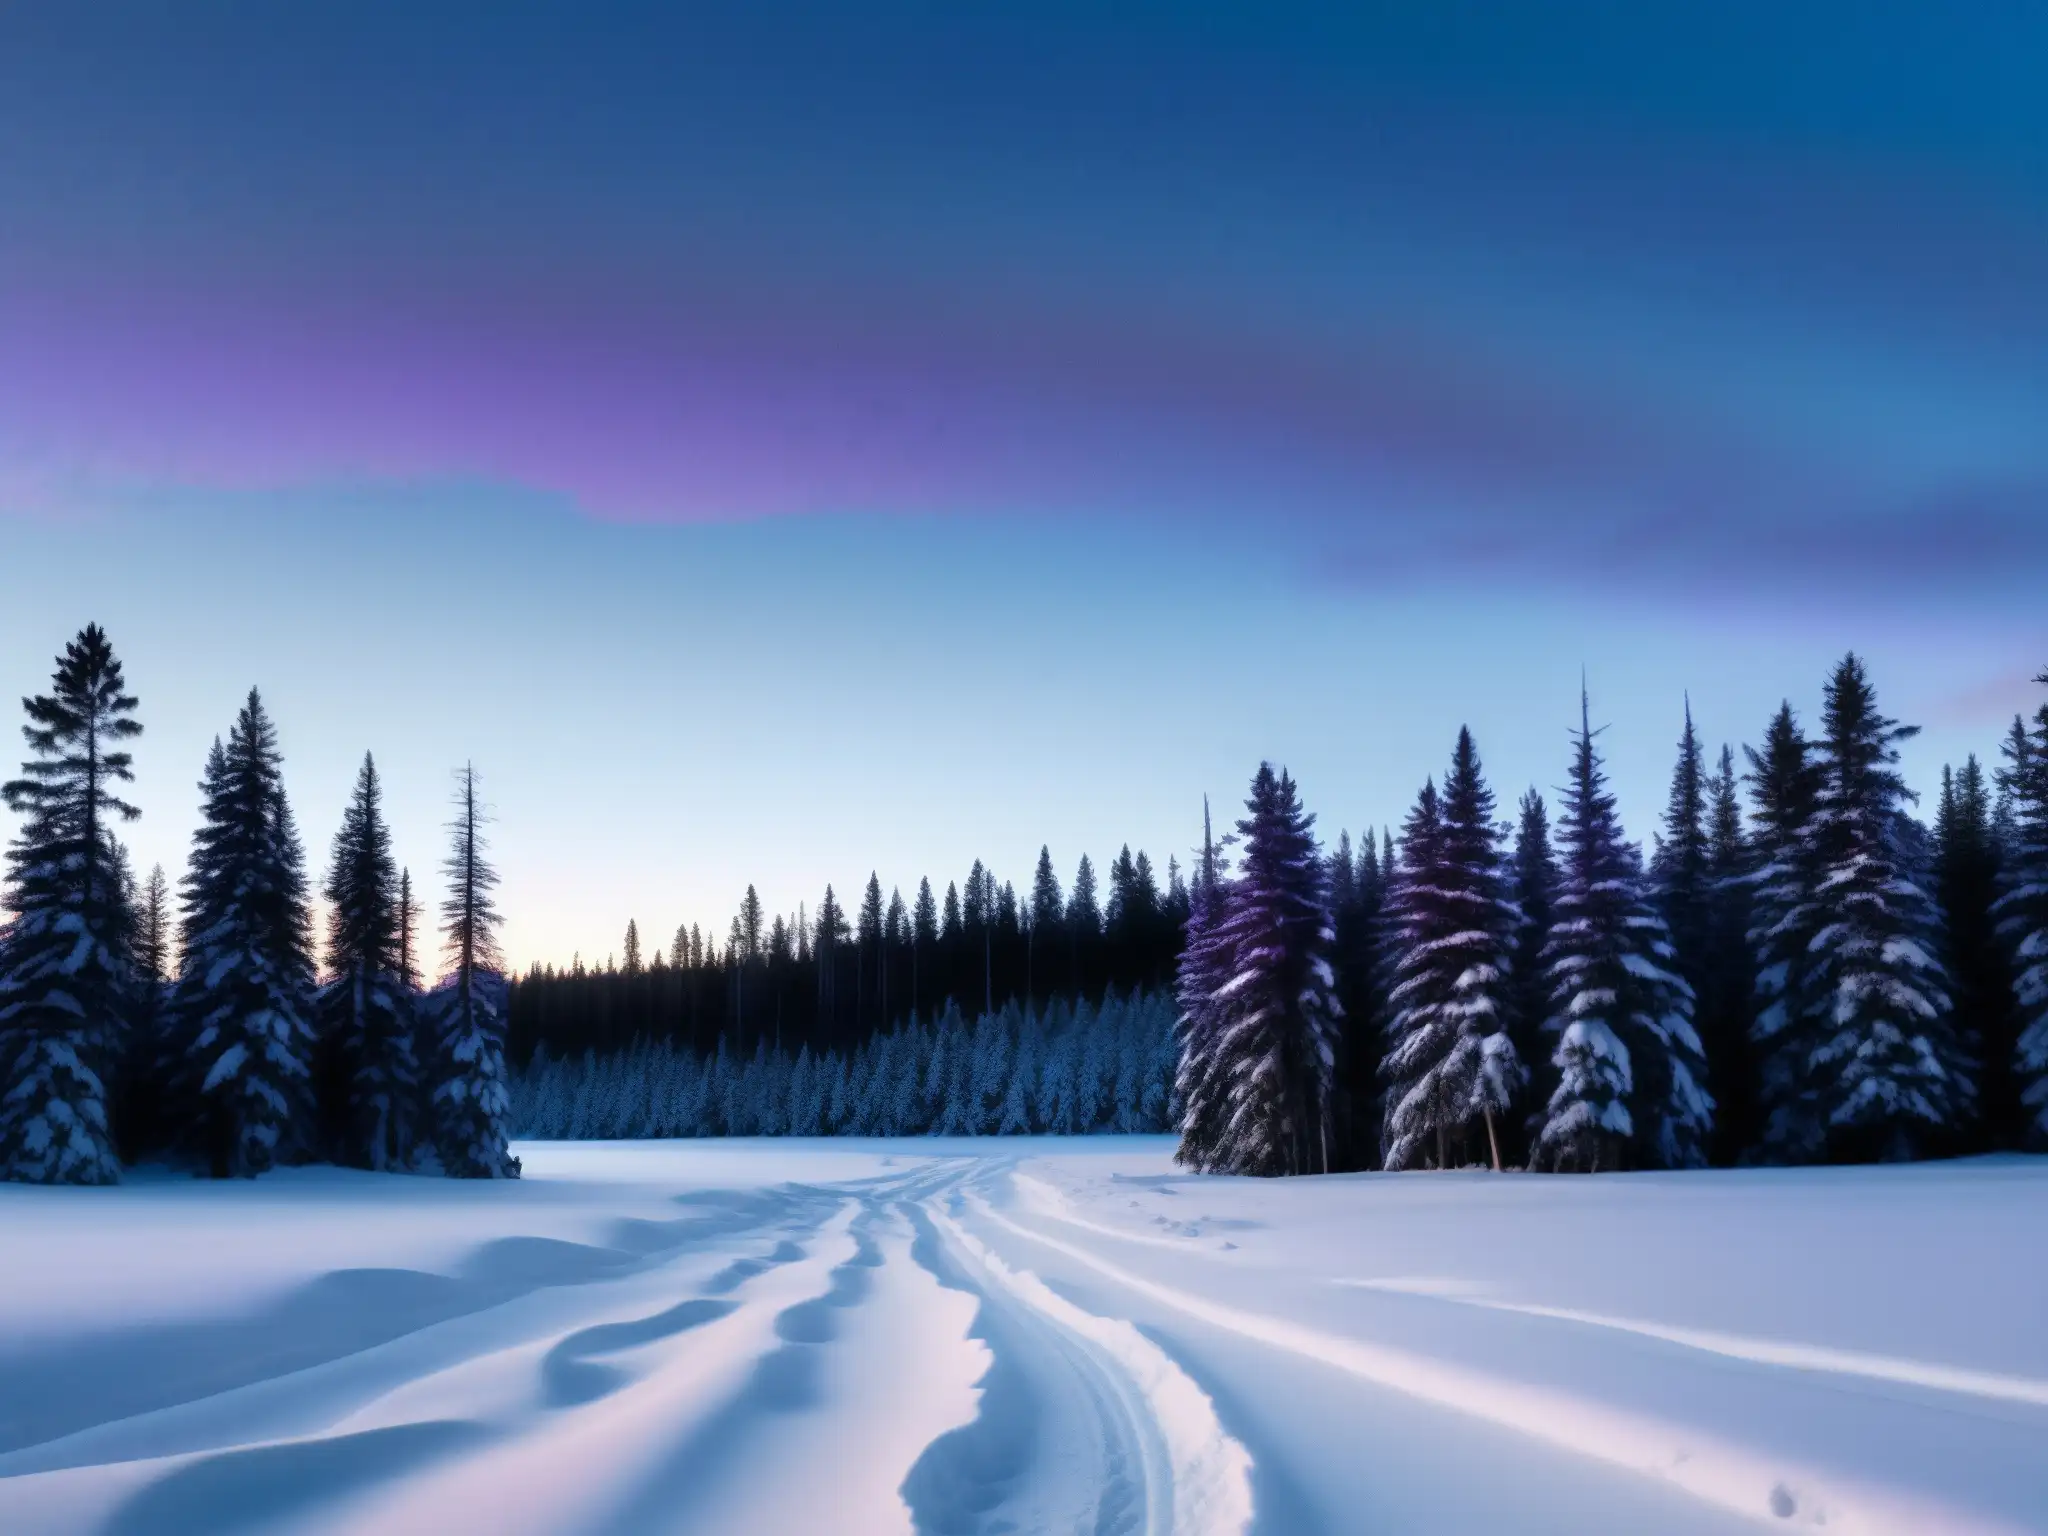 Un bosque nevado en Canadá al anochecer con siluetas de altos pinos proyectando sombras sobre la nieve